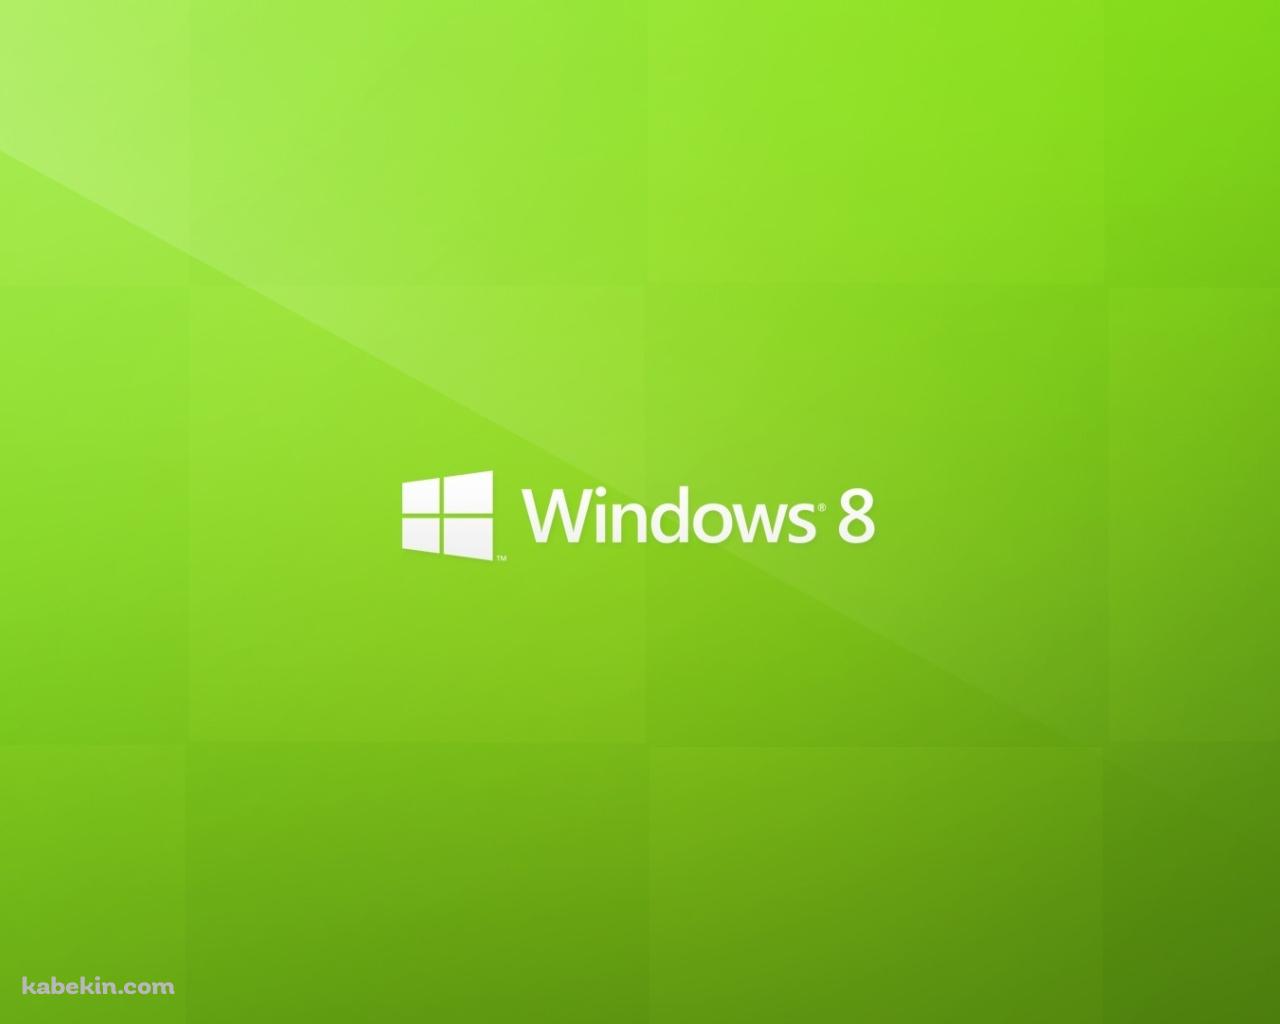 windows 8 ウィンドウズの壁紙(1280px x 1024px) 高画質 PC・デスクトップ用